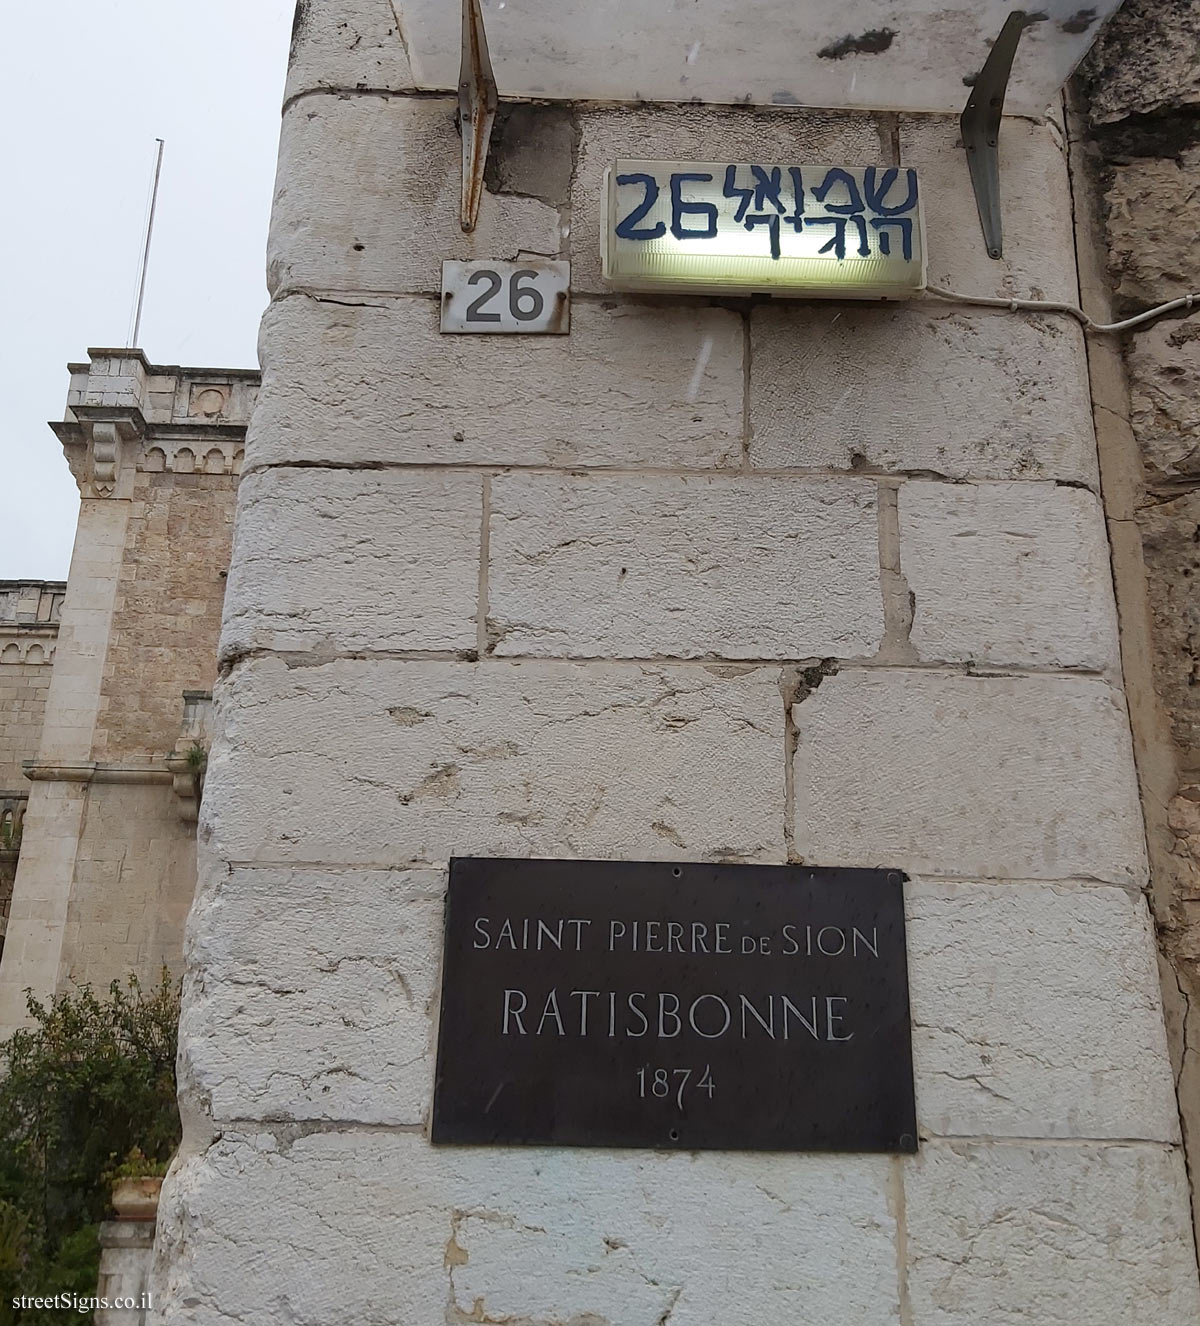 Ratisbonne Monastery - Shmu’el ha-Nagid St 26, Jerusalem, Israel